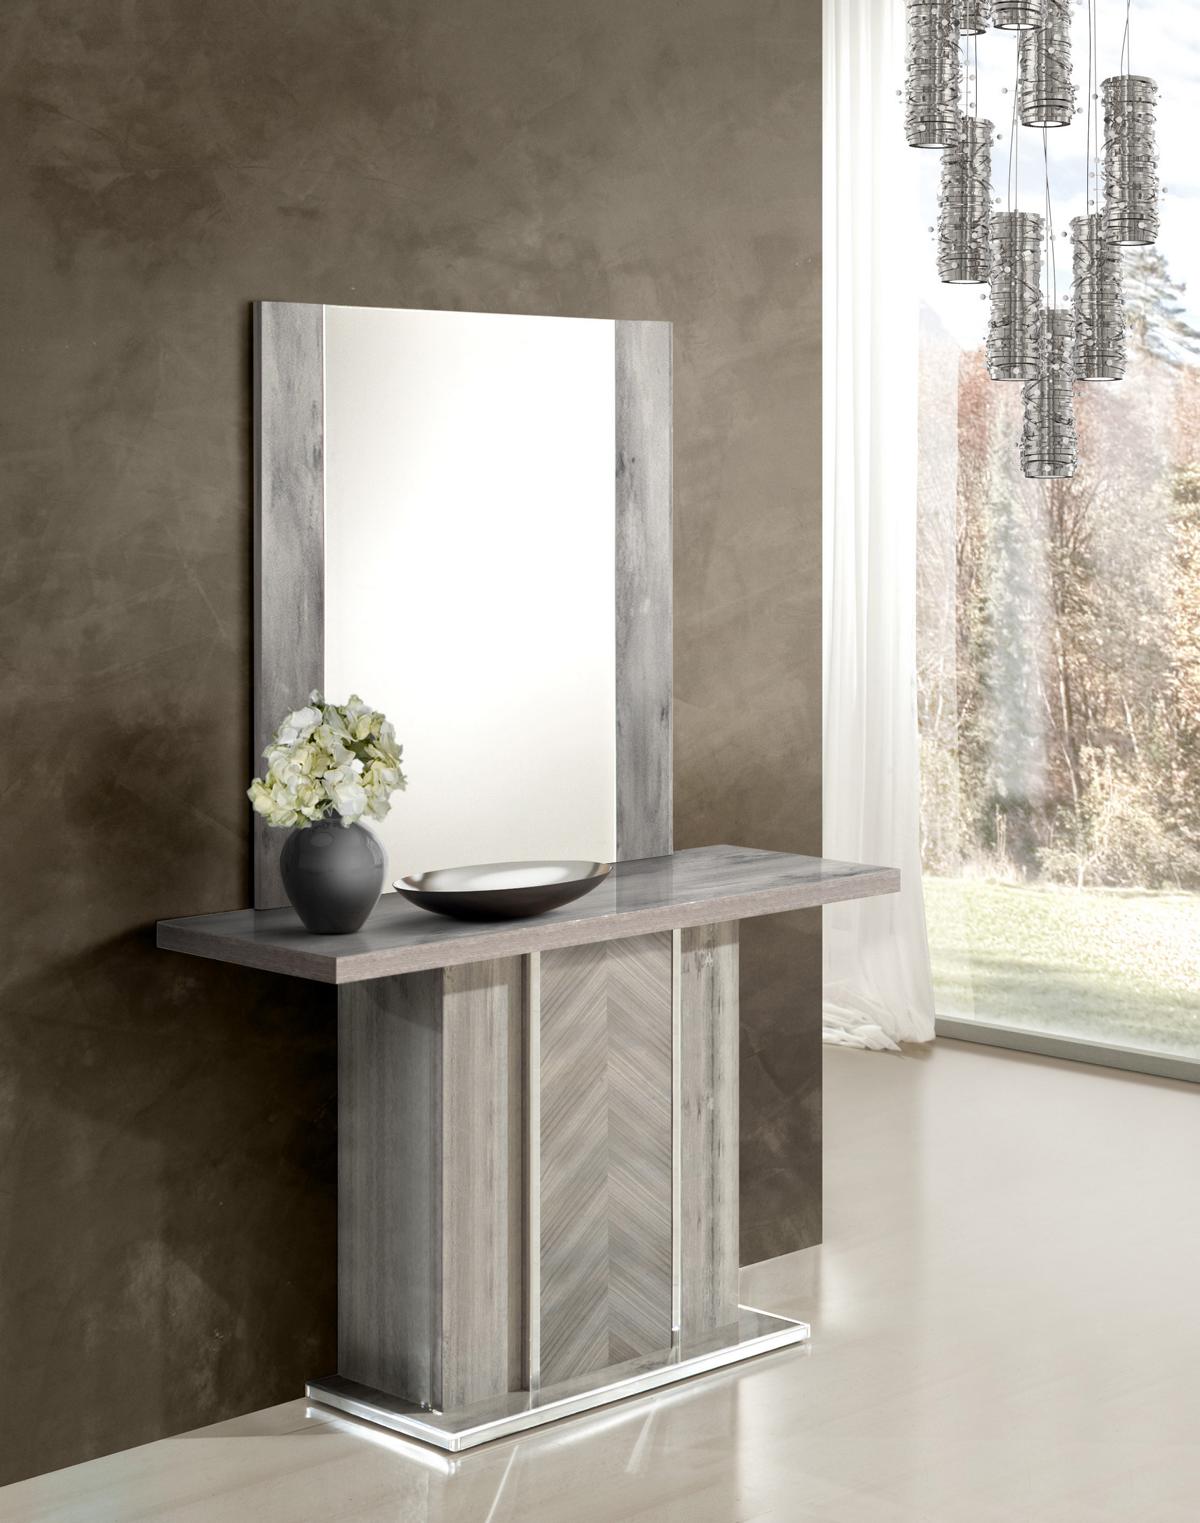 Set Konsolentisch Spiegel Design Luxus Konsolen Tisch Konsole Sideboard Möbel